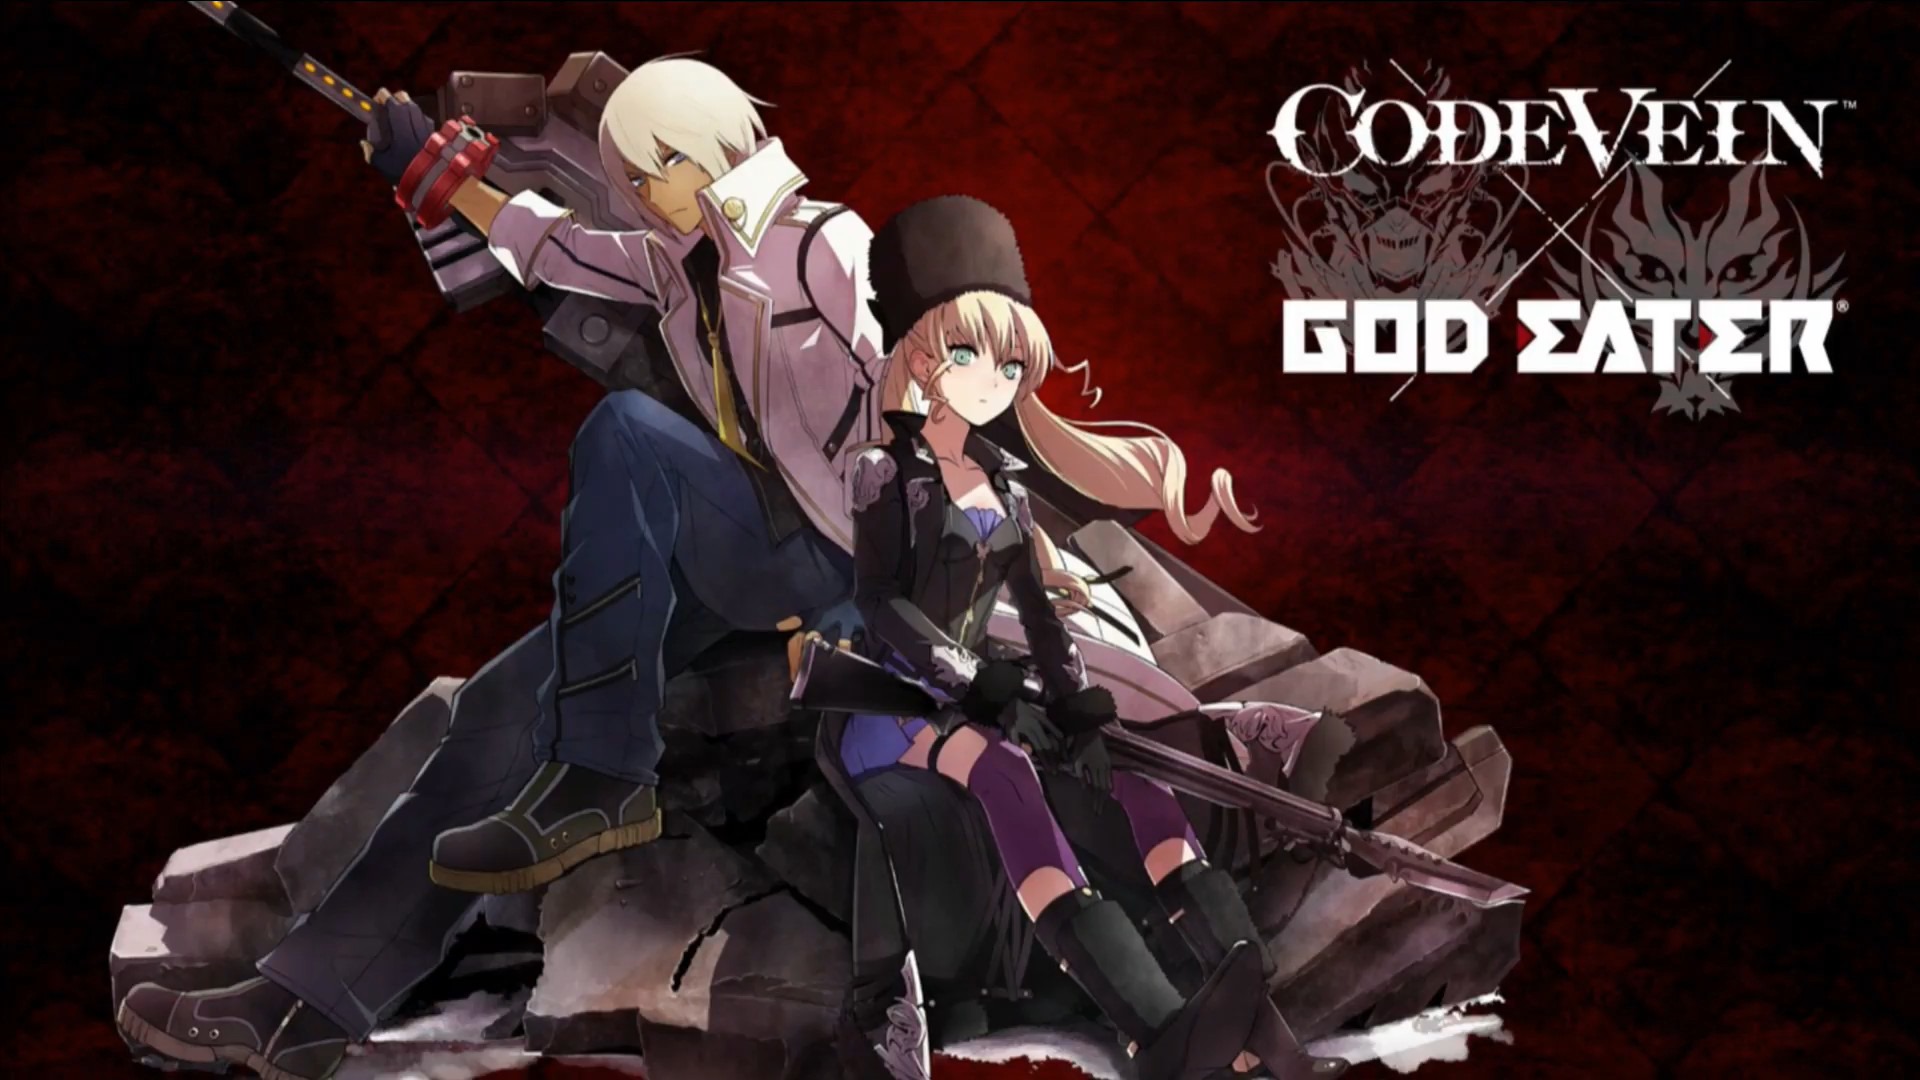 Adiamento de Code Vein não afetará God Eater 3, diz Bandai Namco